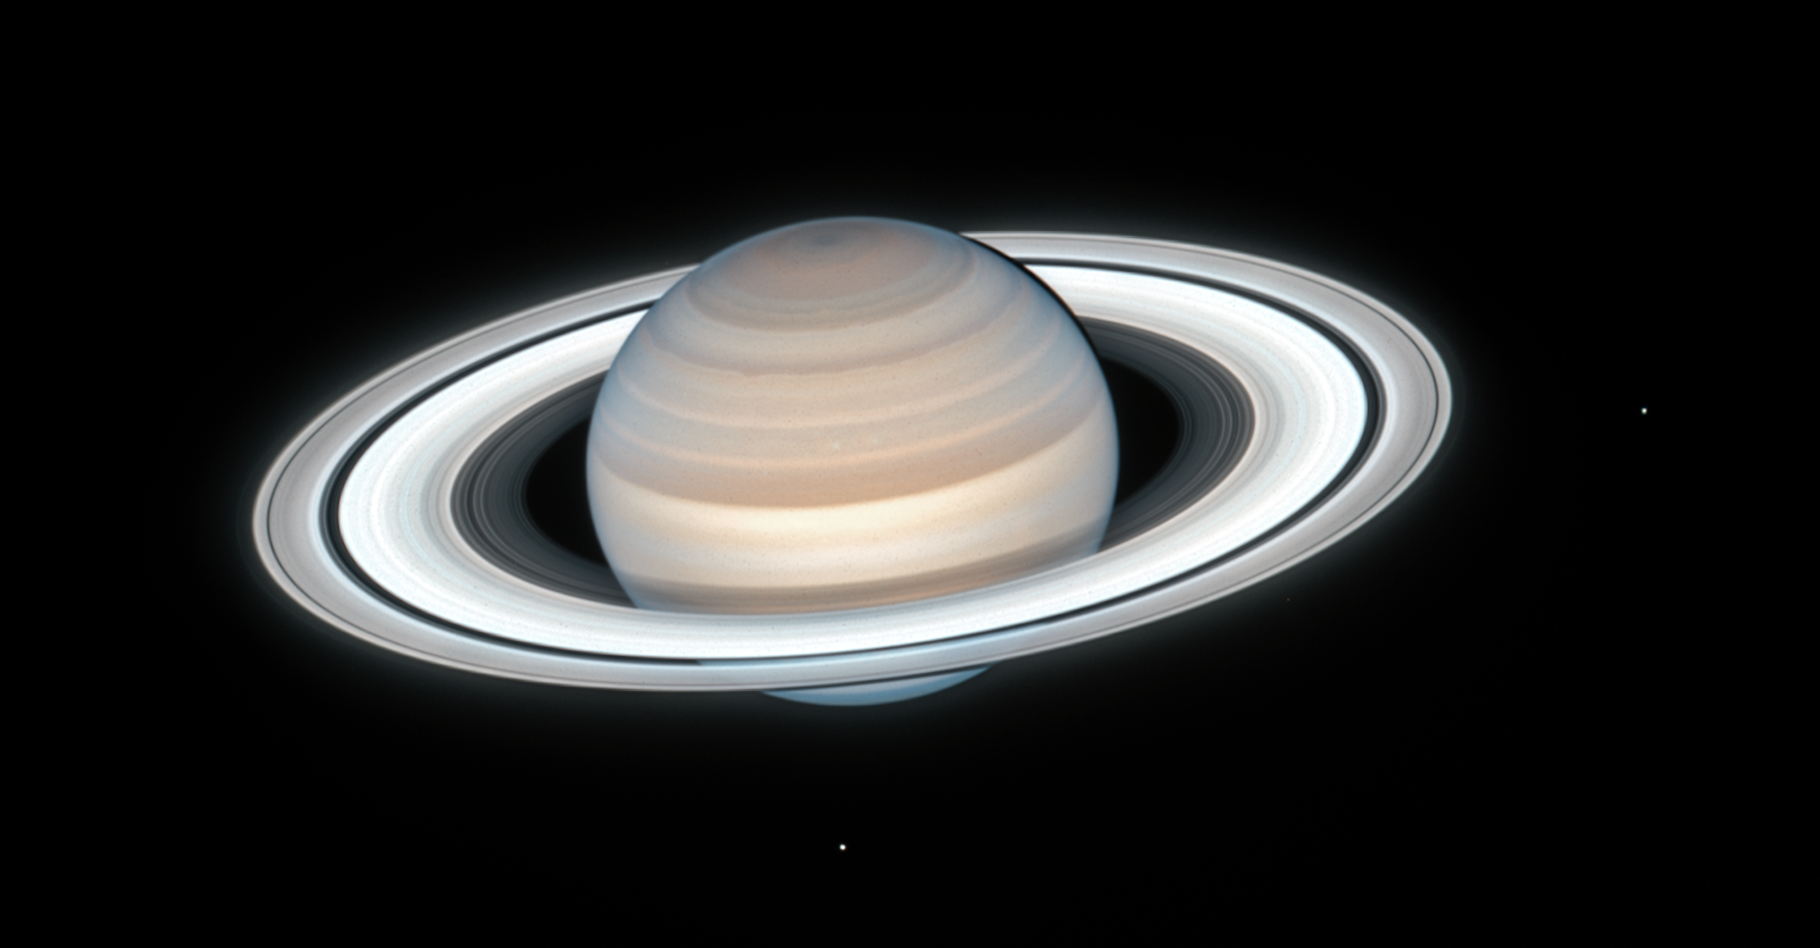 L’atmosphère de Saturne est principalement composée d’hydrogène et d’hélium. On y trouve des traces d’ammoniac, de méthane, de vapeur d’eau et d’hydrocarbures qui lui donnent une couleur brun jaunâtre. Cette dernière image prise par le télescope spatial Hubble montre aussi deux des satellites de la planète aux anneaux : Mimas à droite et Encelade en bas. © Nasa, ESA, A. Simon (Goddard Space Flight Center), M.H. Wong (University of California, Berkeley), and the OPAL Team